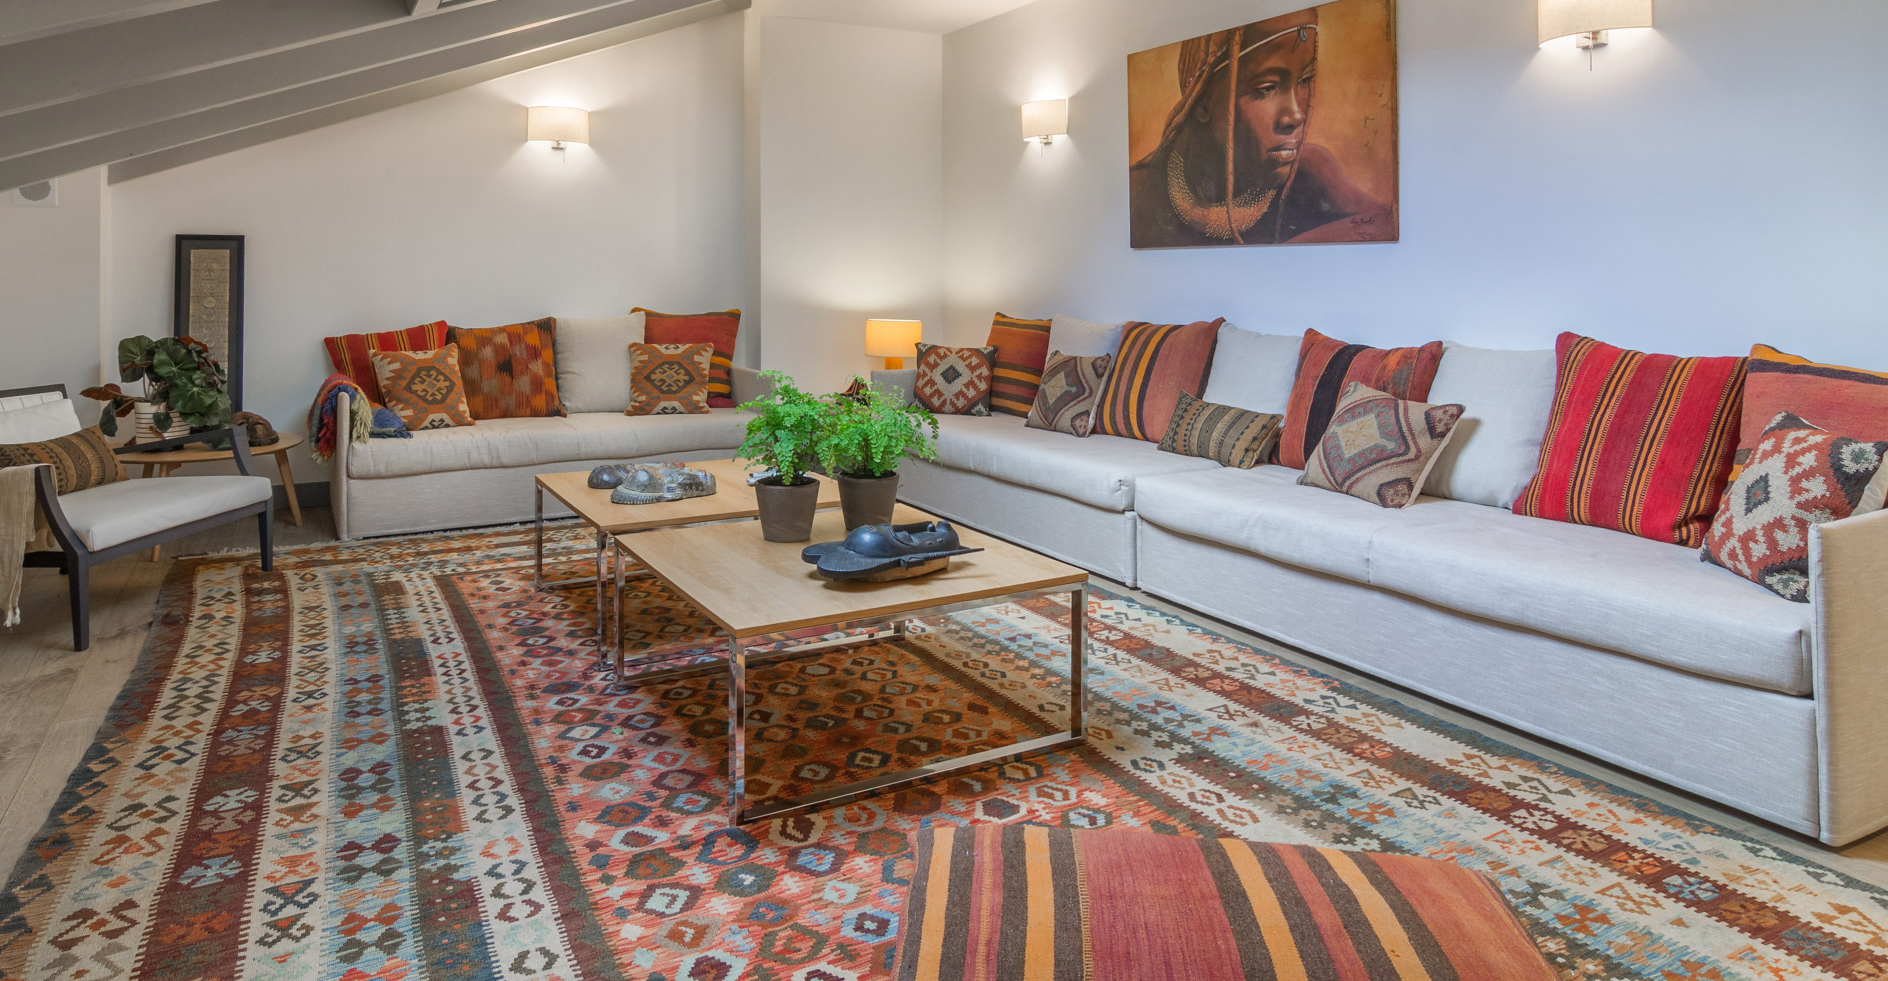 Vivienda diseñada por Tribeca. Sala de estar decorada con alfombra y cojines kilim, máscaras africanas y cuadro representando a un guerrero masai.   